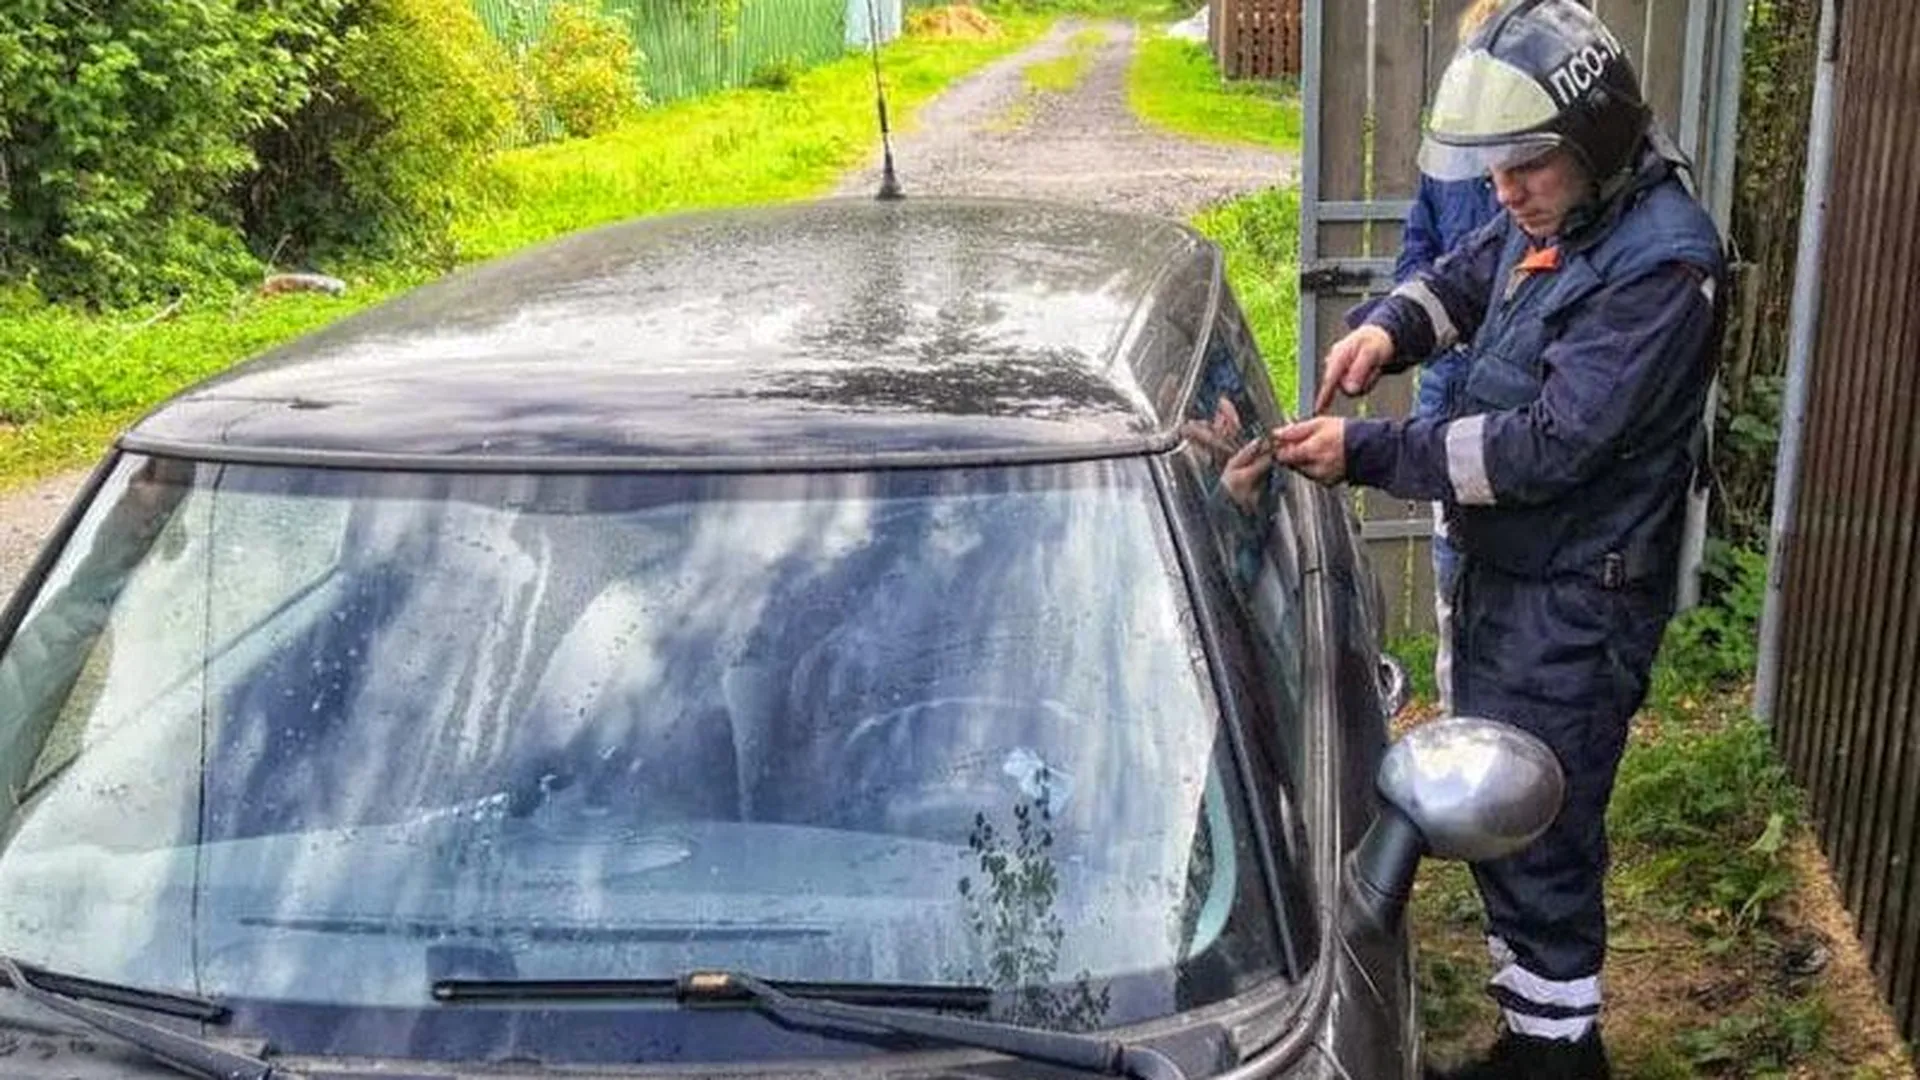 Спасатели рассказали, как освободили малышку из заблокированного авто в Наро-Фоминске 